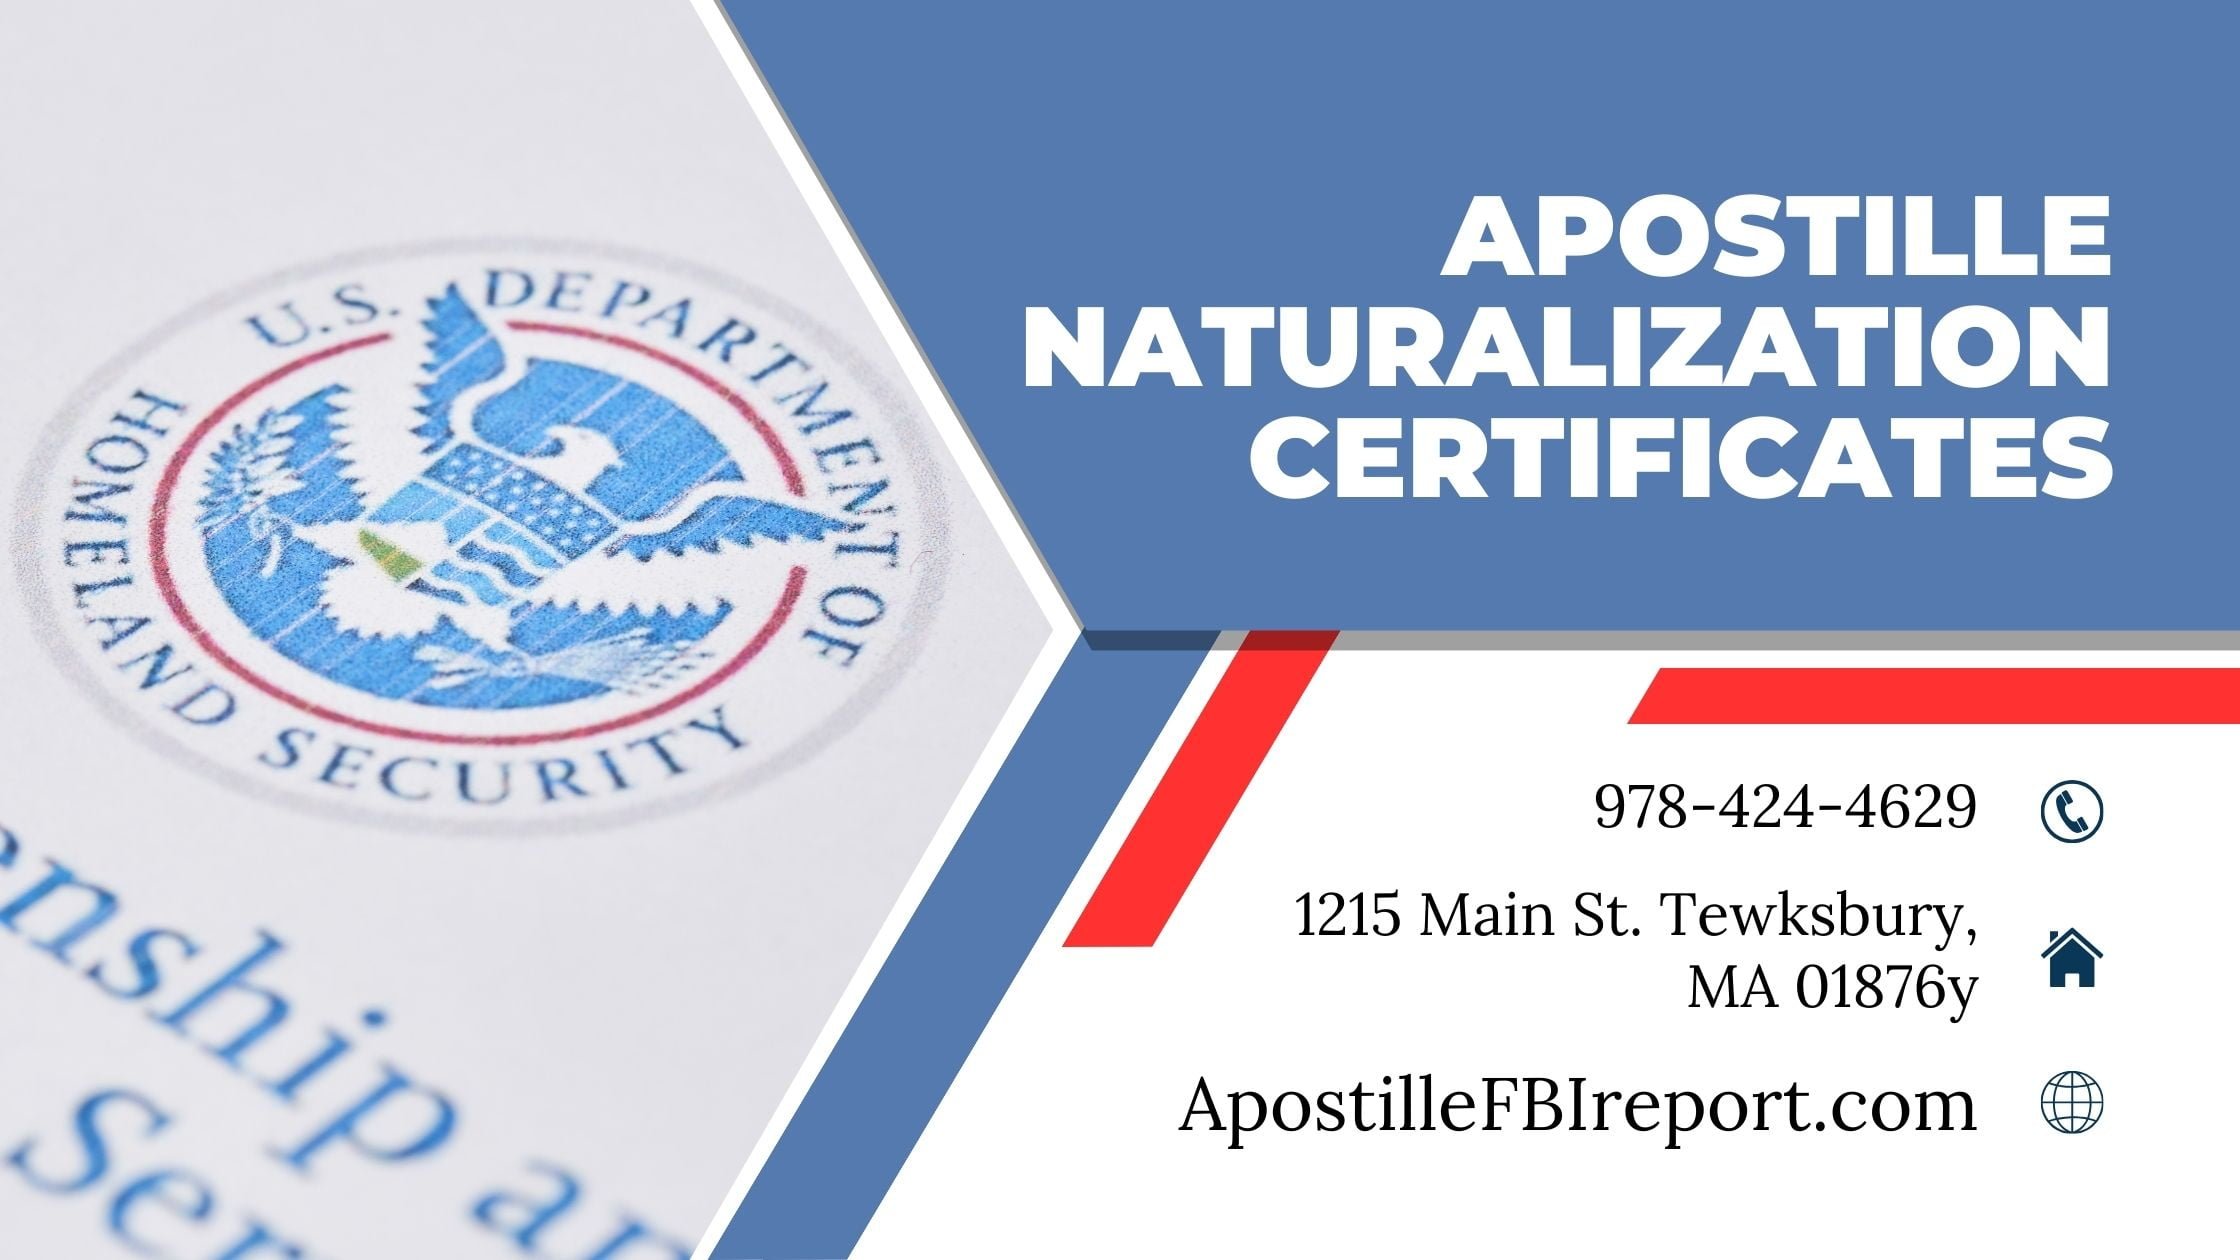 Naturalization Certificate Apostille Service In MA, NH, RI, CA, FL - Apostille FBI Report - Apostille FBI Report - Apostille FBI Report